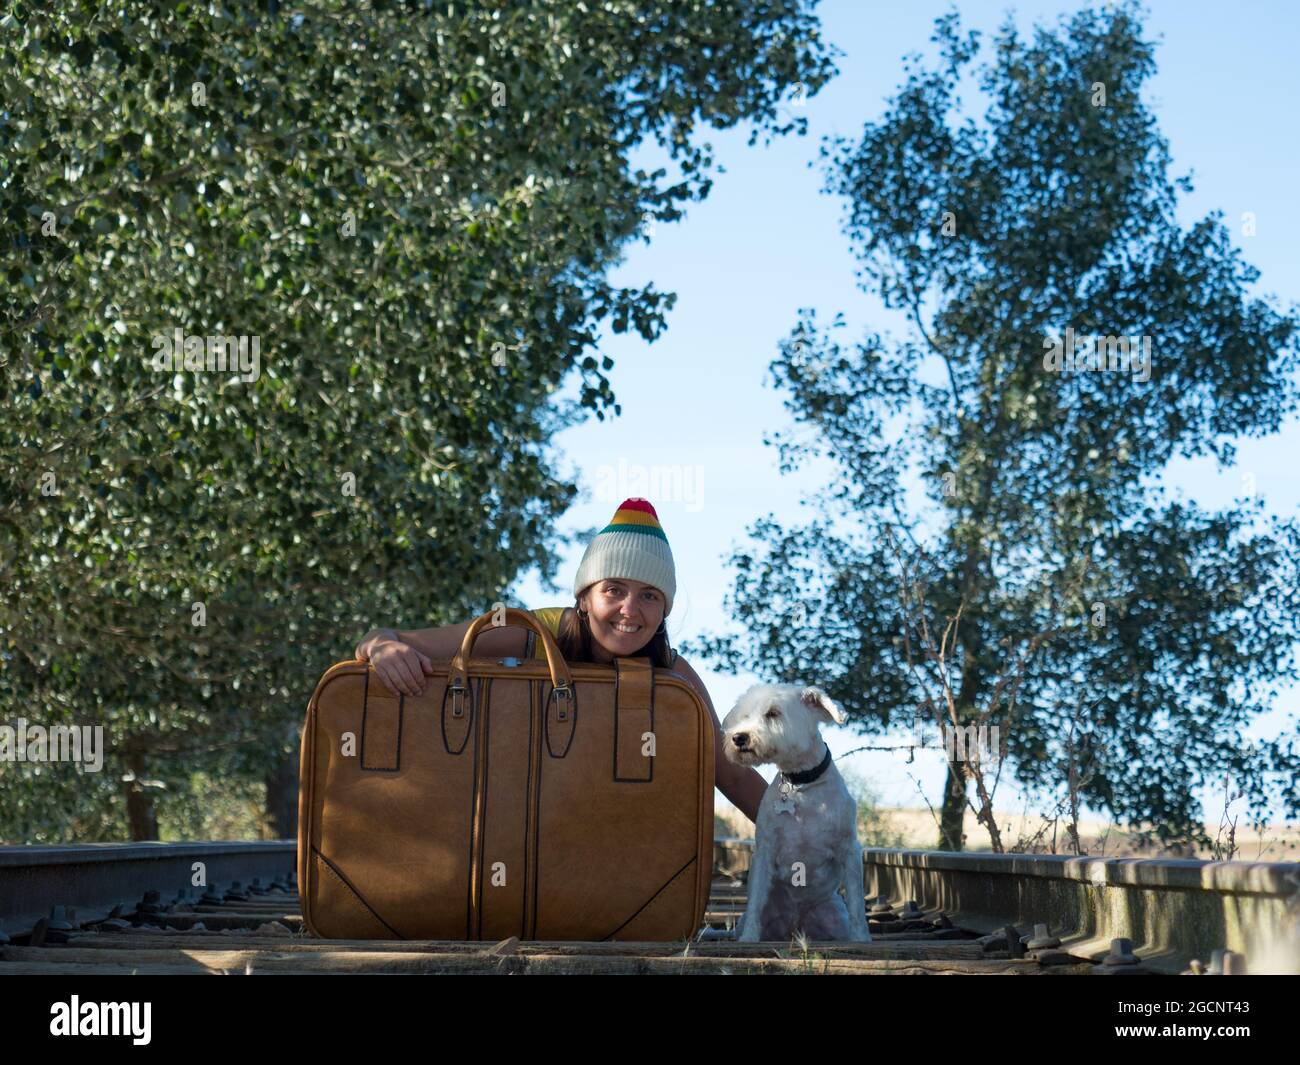 andate in viaggio con il cane, il concetto di vacanza, la gioia e il divertimento insieme Foto Stock